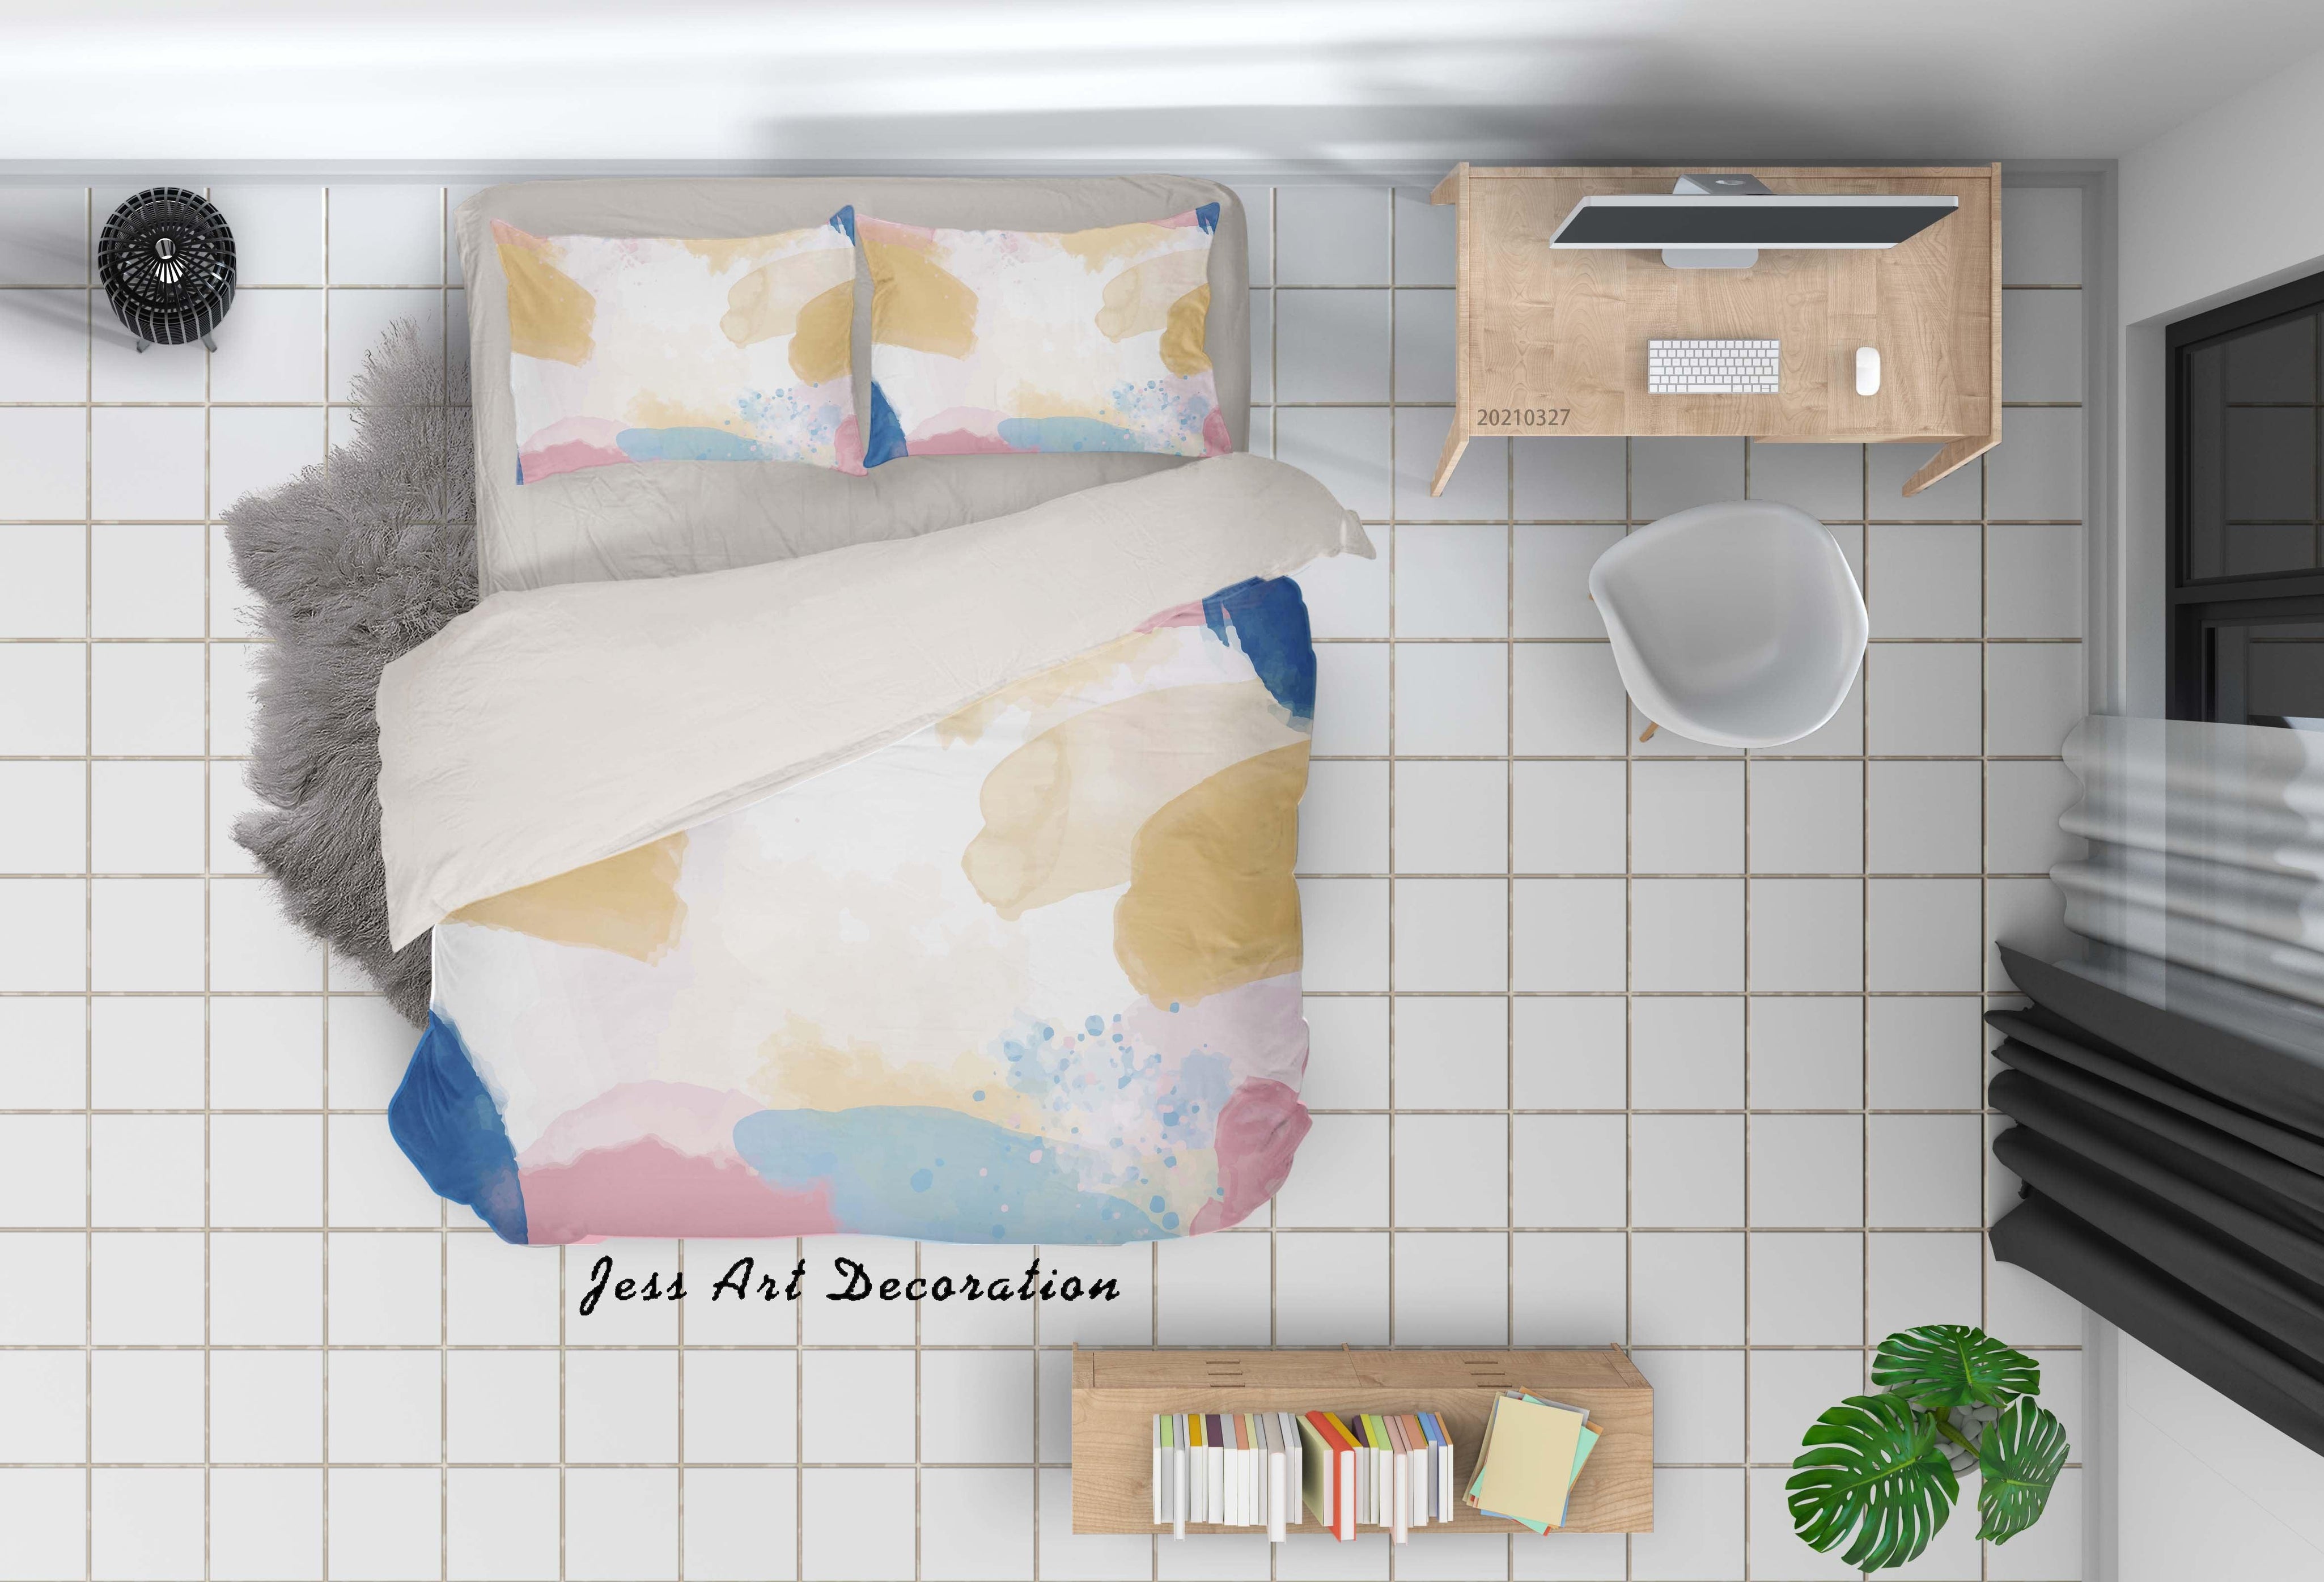 3D Watercolor Color Quilt Cover Set Bedding Set Duvet Cover Pillowcases 74- Jess Art Decoration